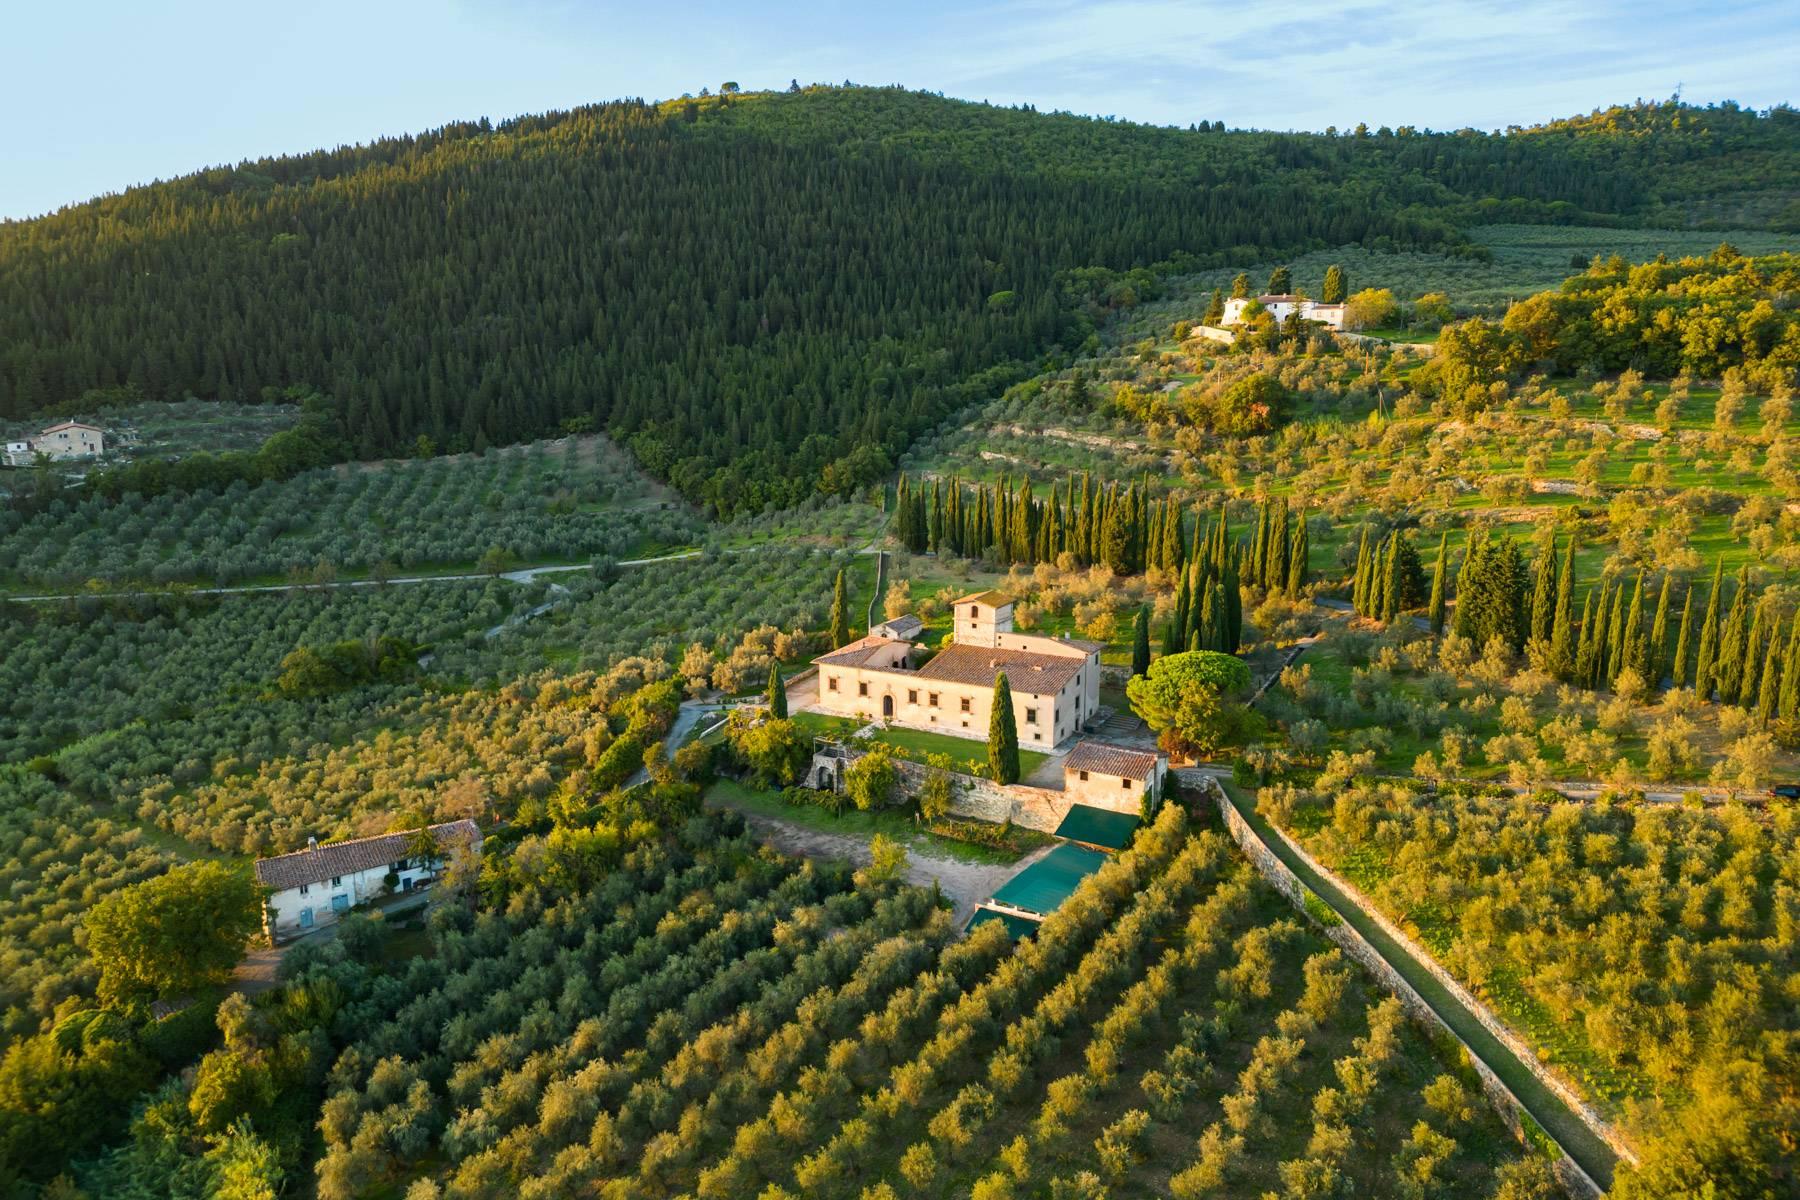 Grande villa padronale d'epoca nella più rinomata zona olearia vicino a Firenze - 4